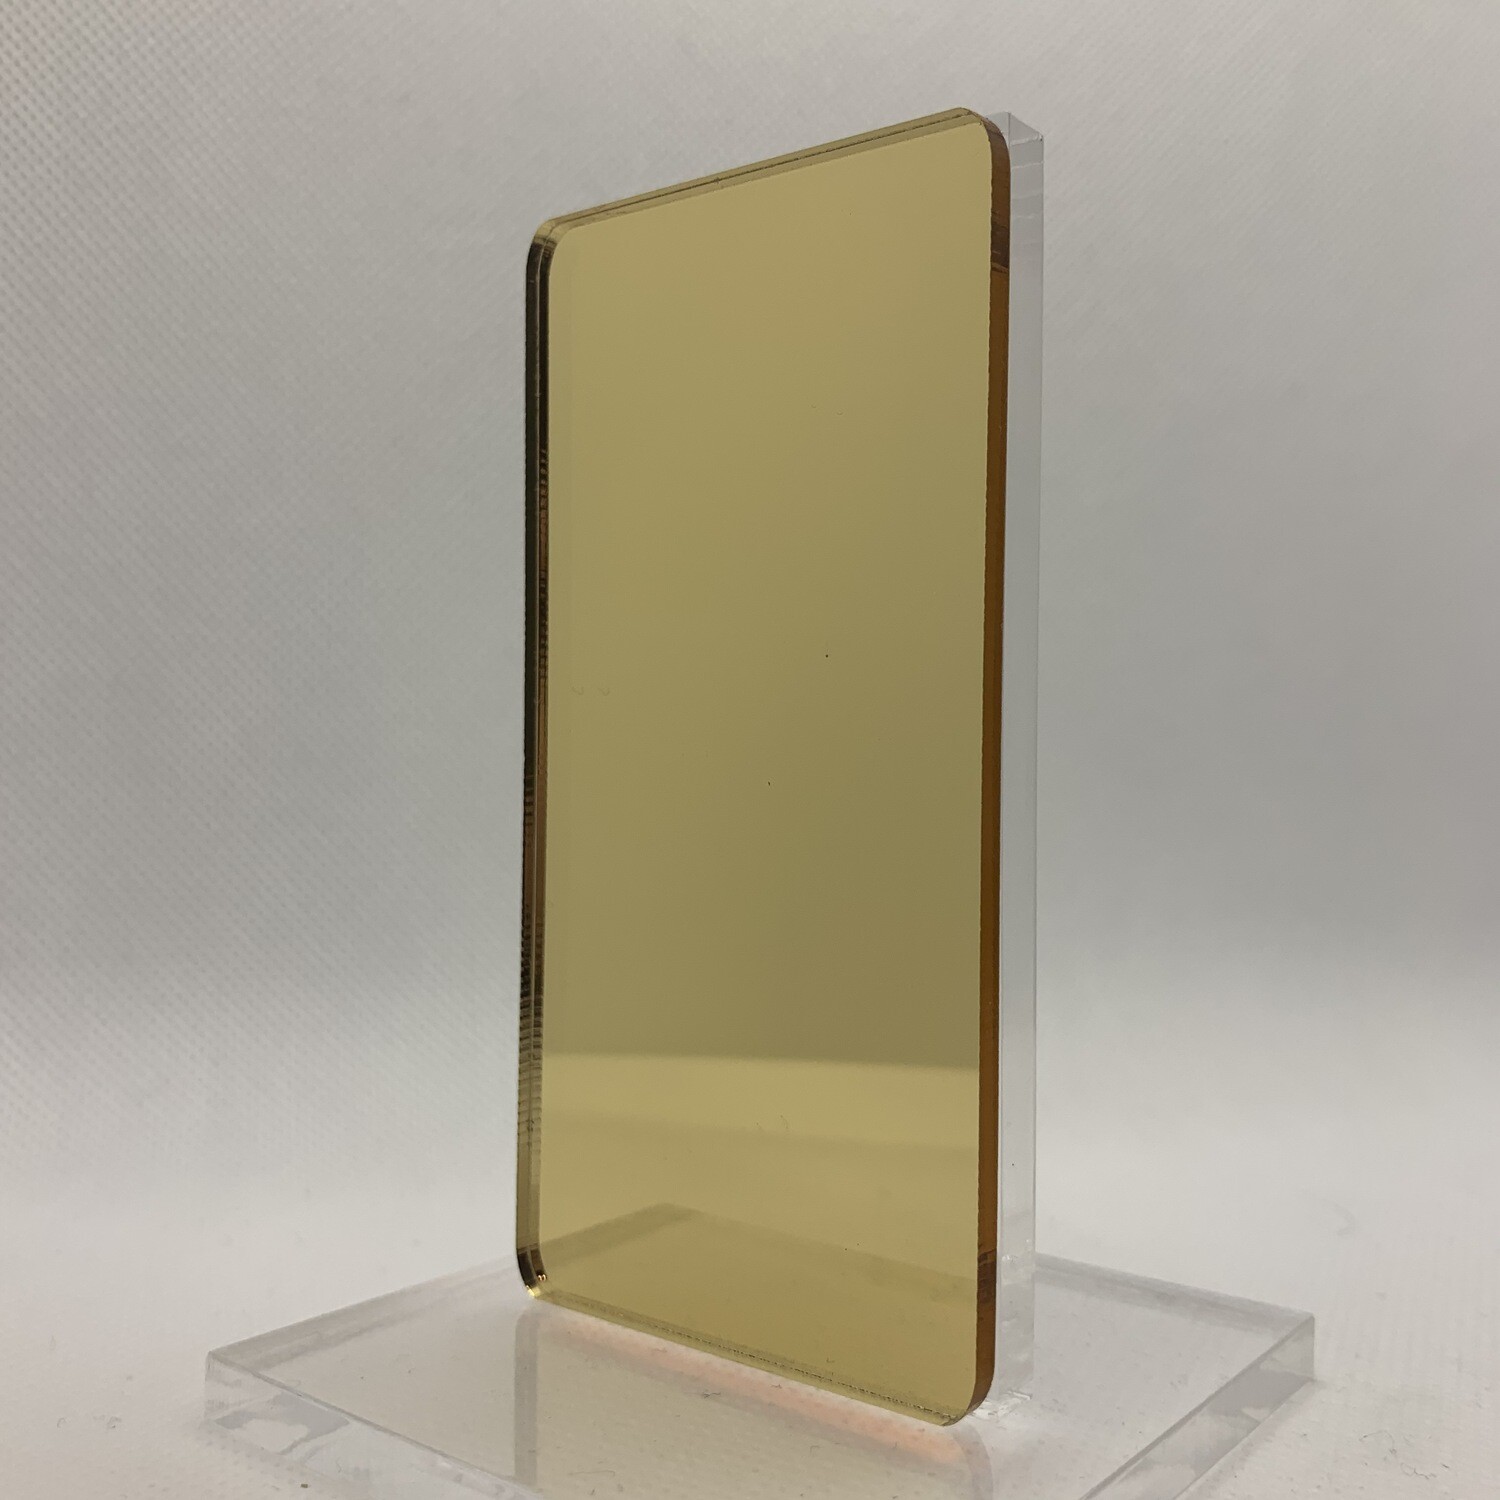 Gold Mirror - 1/8"